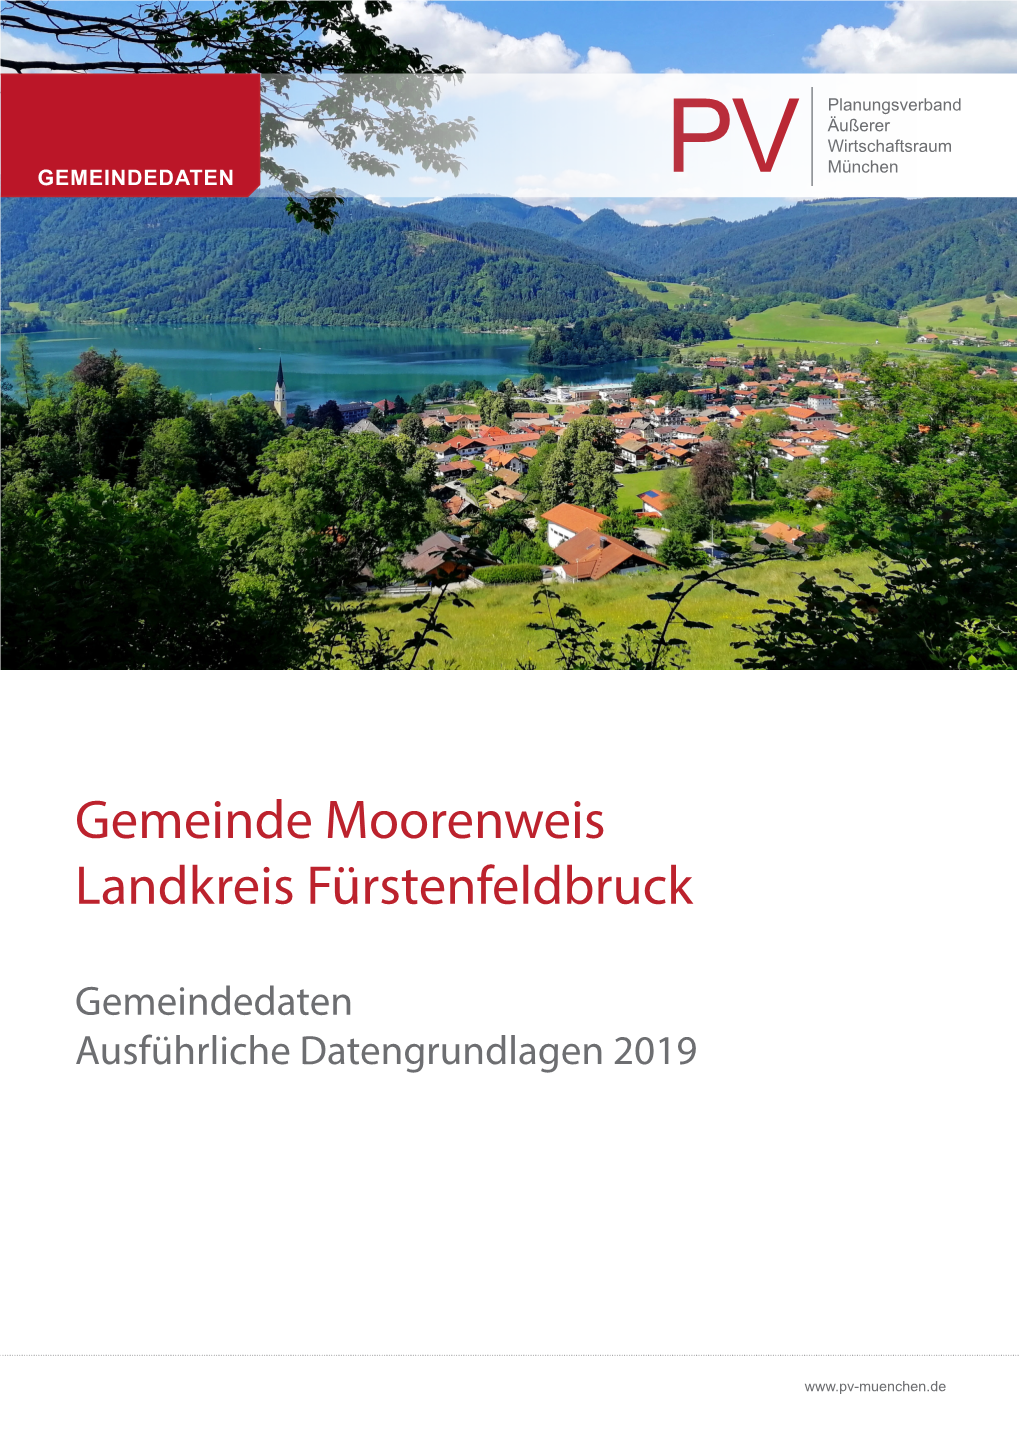 Gemeinde Moorenweis Landkreis Fürstenfeldbruck